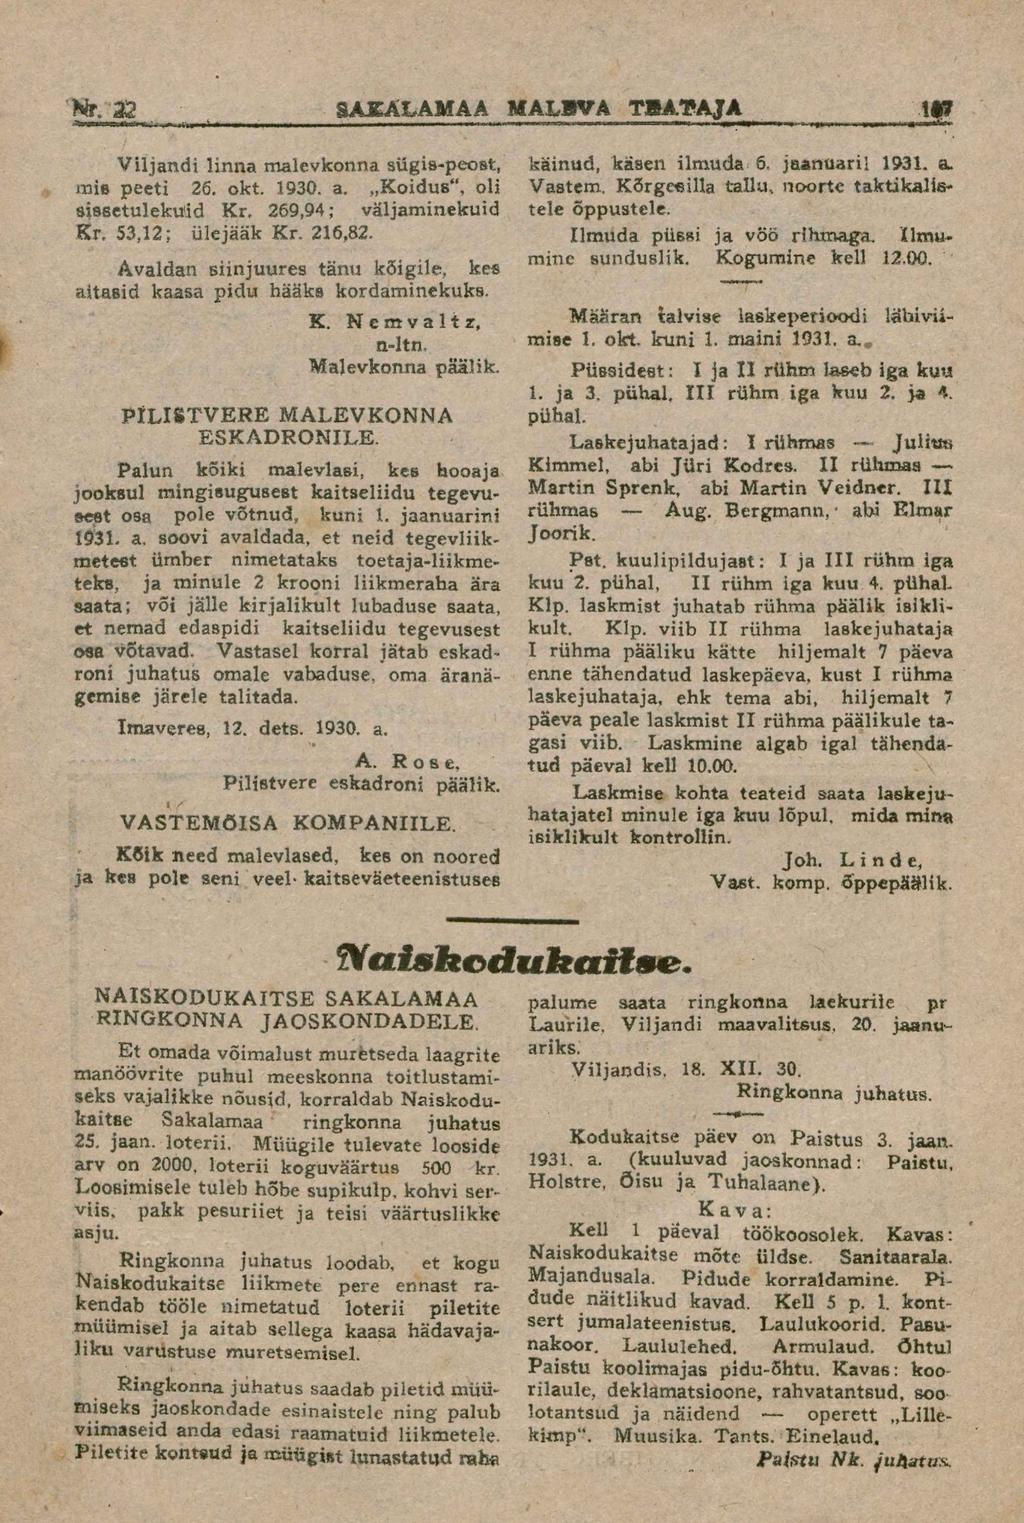 Viljandi linna malevkonna sügis-peost, mis peeti 26. okt. 1930. a.,,koidus", oli sissetulekuid Kr, 269,94; väljaminekuid Kr. 53,12; ülejääk Kr. 216,82.